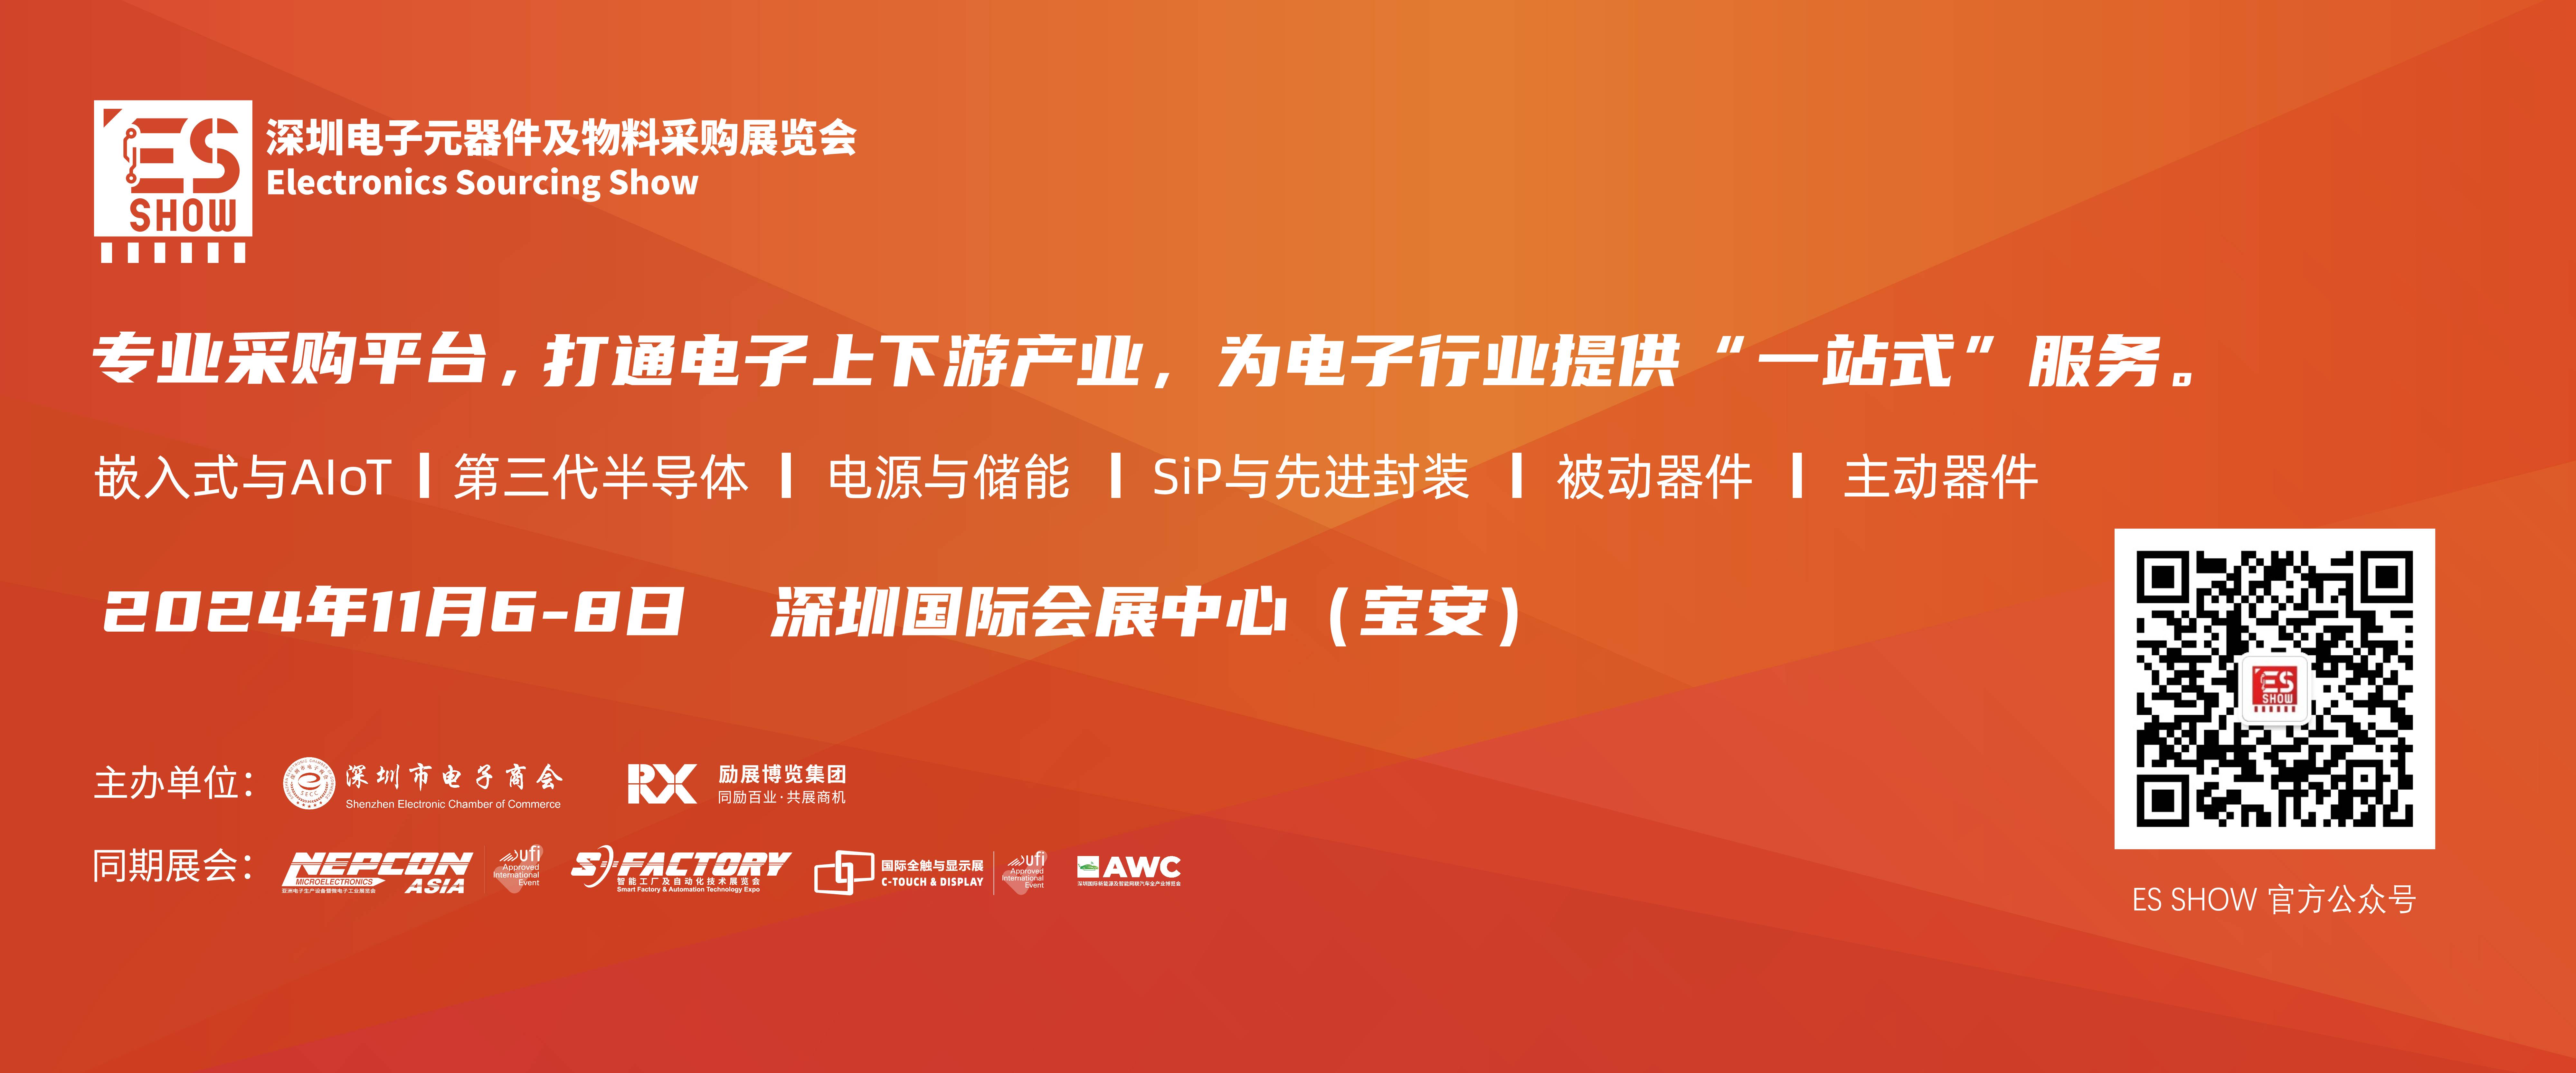 SLAM 机器人 FPGA 华南电子展 深圳电子展中国电子展